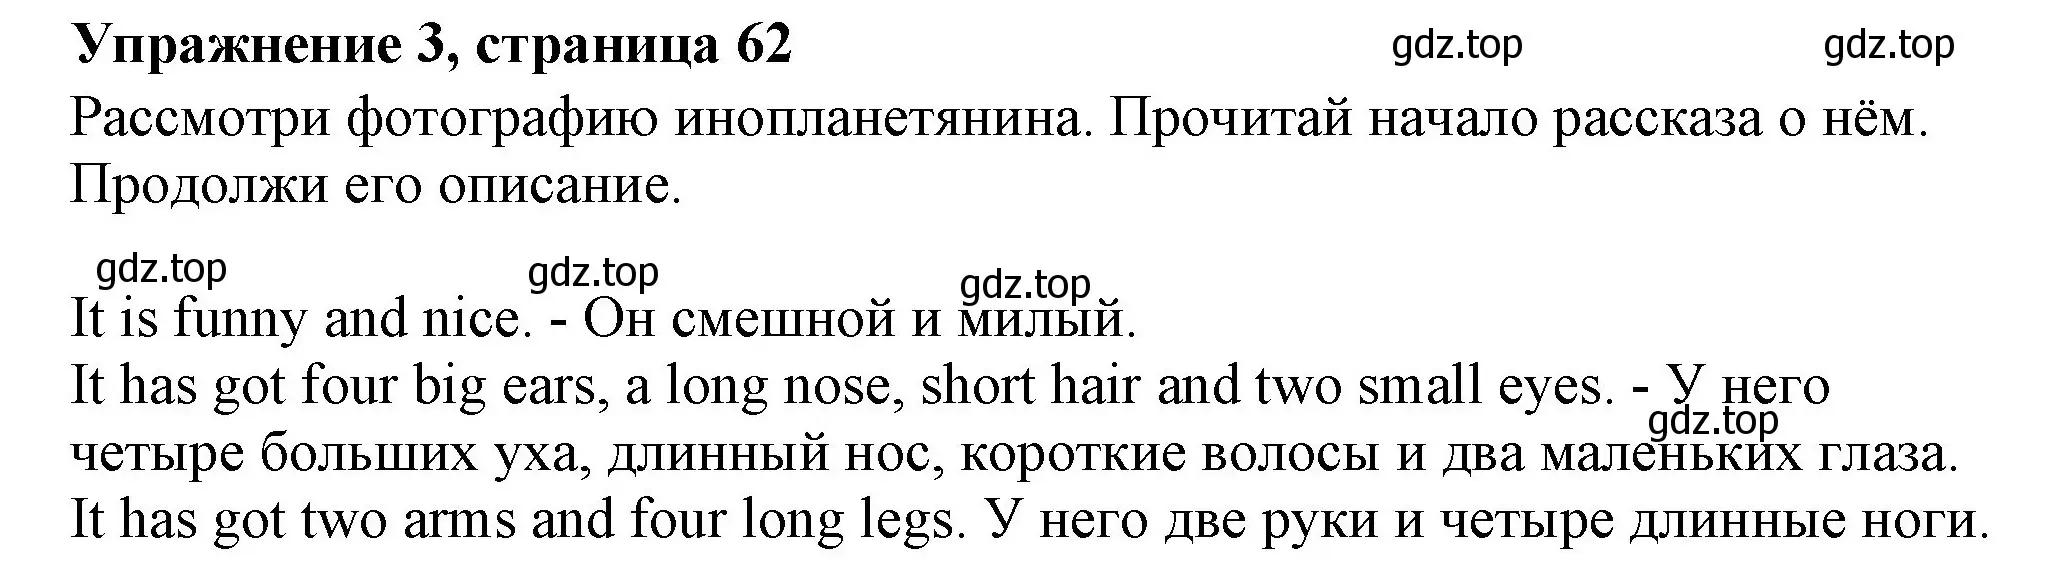 Решение номер 3 (страница 62) гдз по английскому языку 3 класс Биболетова, Денисенко, рабочая тетрадь